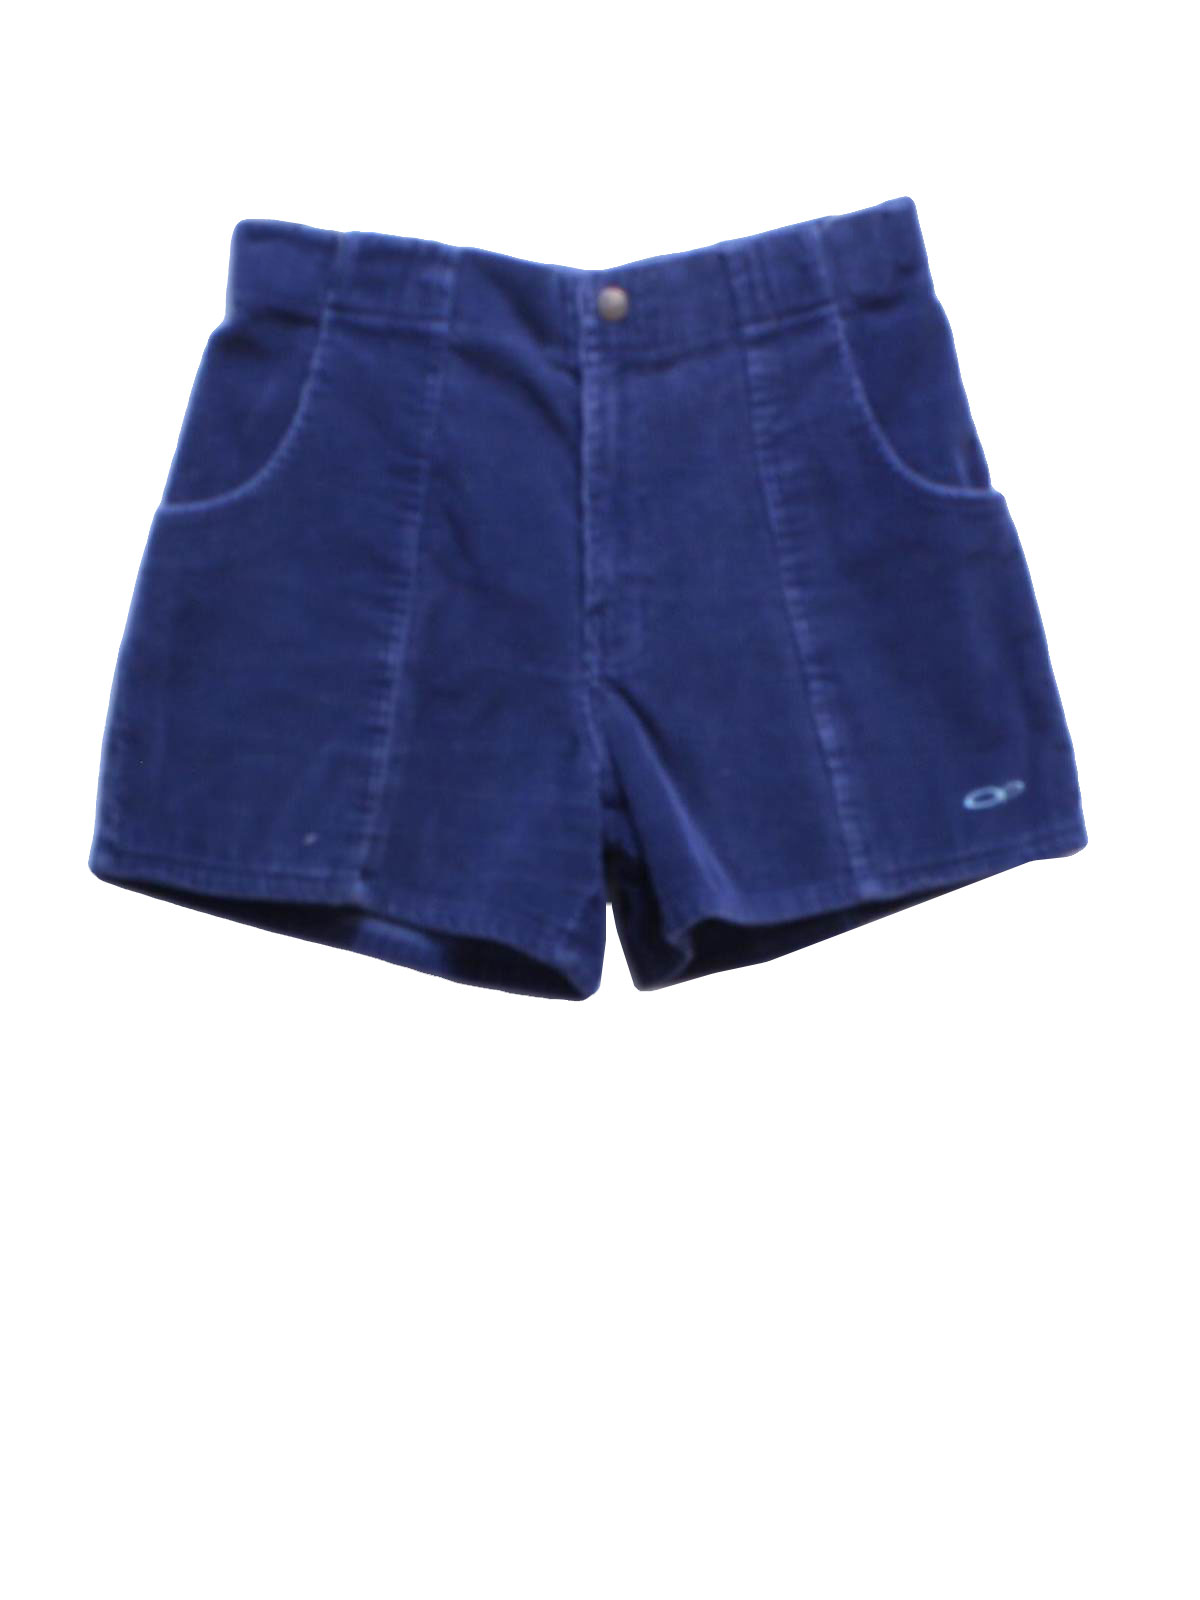 Eighties Vintage Shorts: 80s style (made in 90s) -OP, Ocean Pacific ...